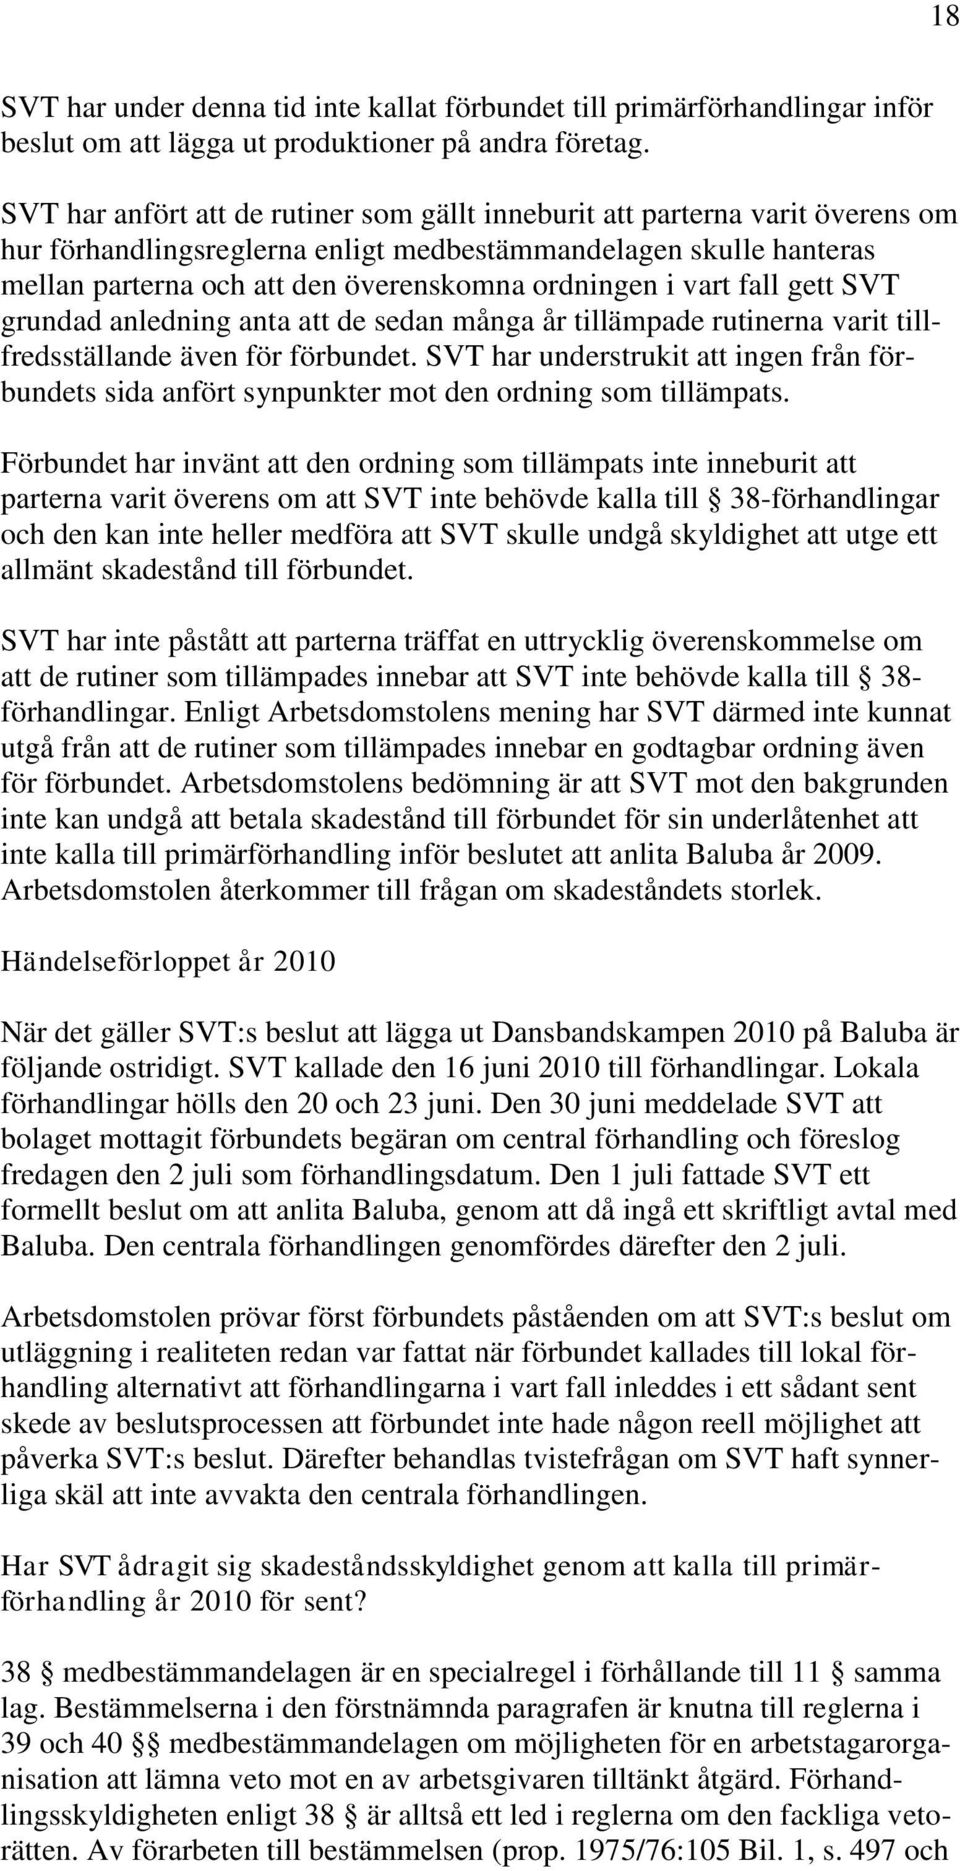 i vart fall gett SVT grundad anledning anta att de sedan många år tillämpade rutinerna varit tillfredsställande även för förbundet.